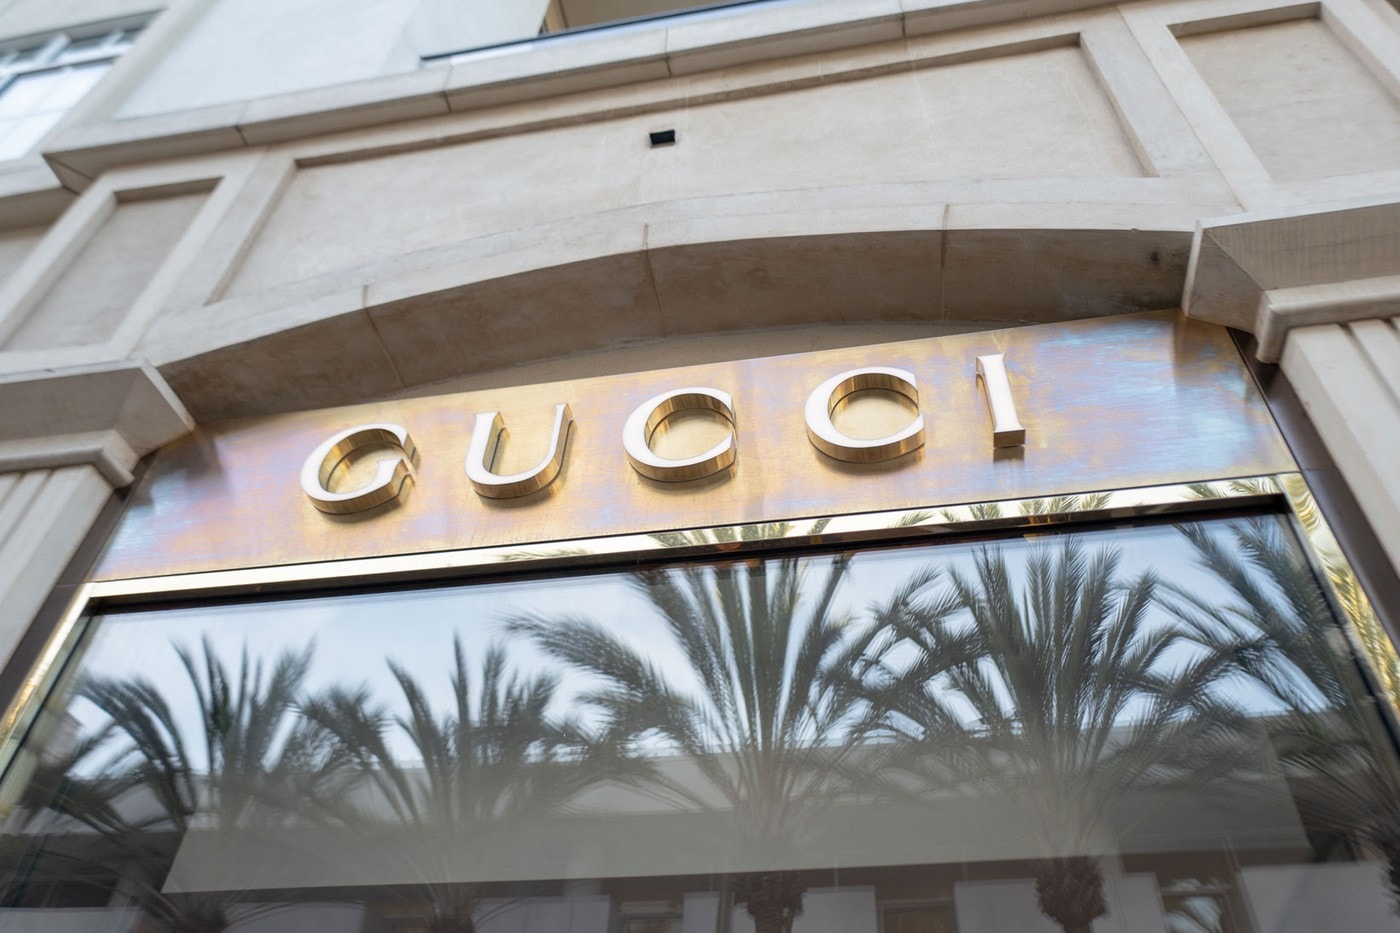 Covid-19 Kering Gucci Balenciaga Bottega Veneta stores close